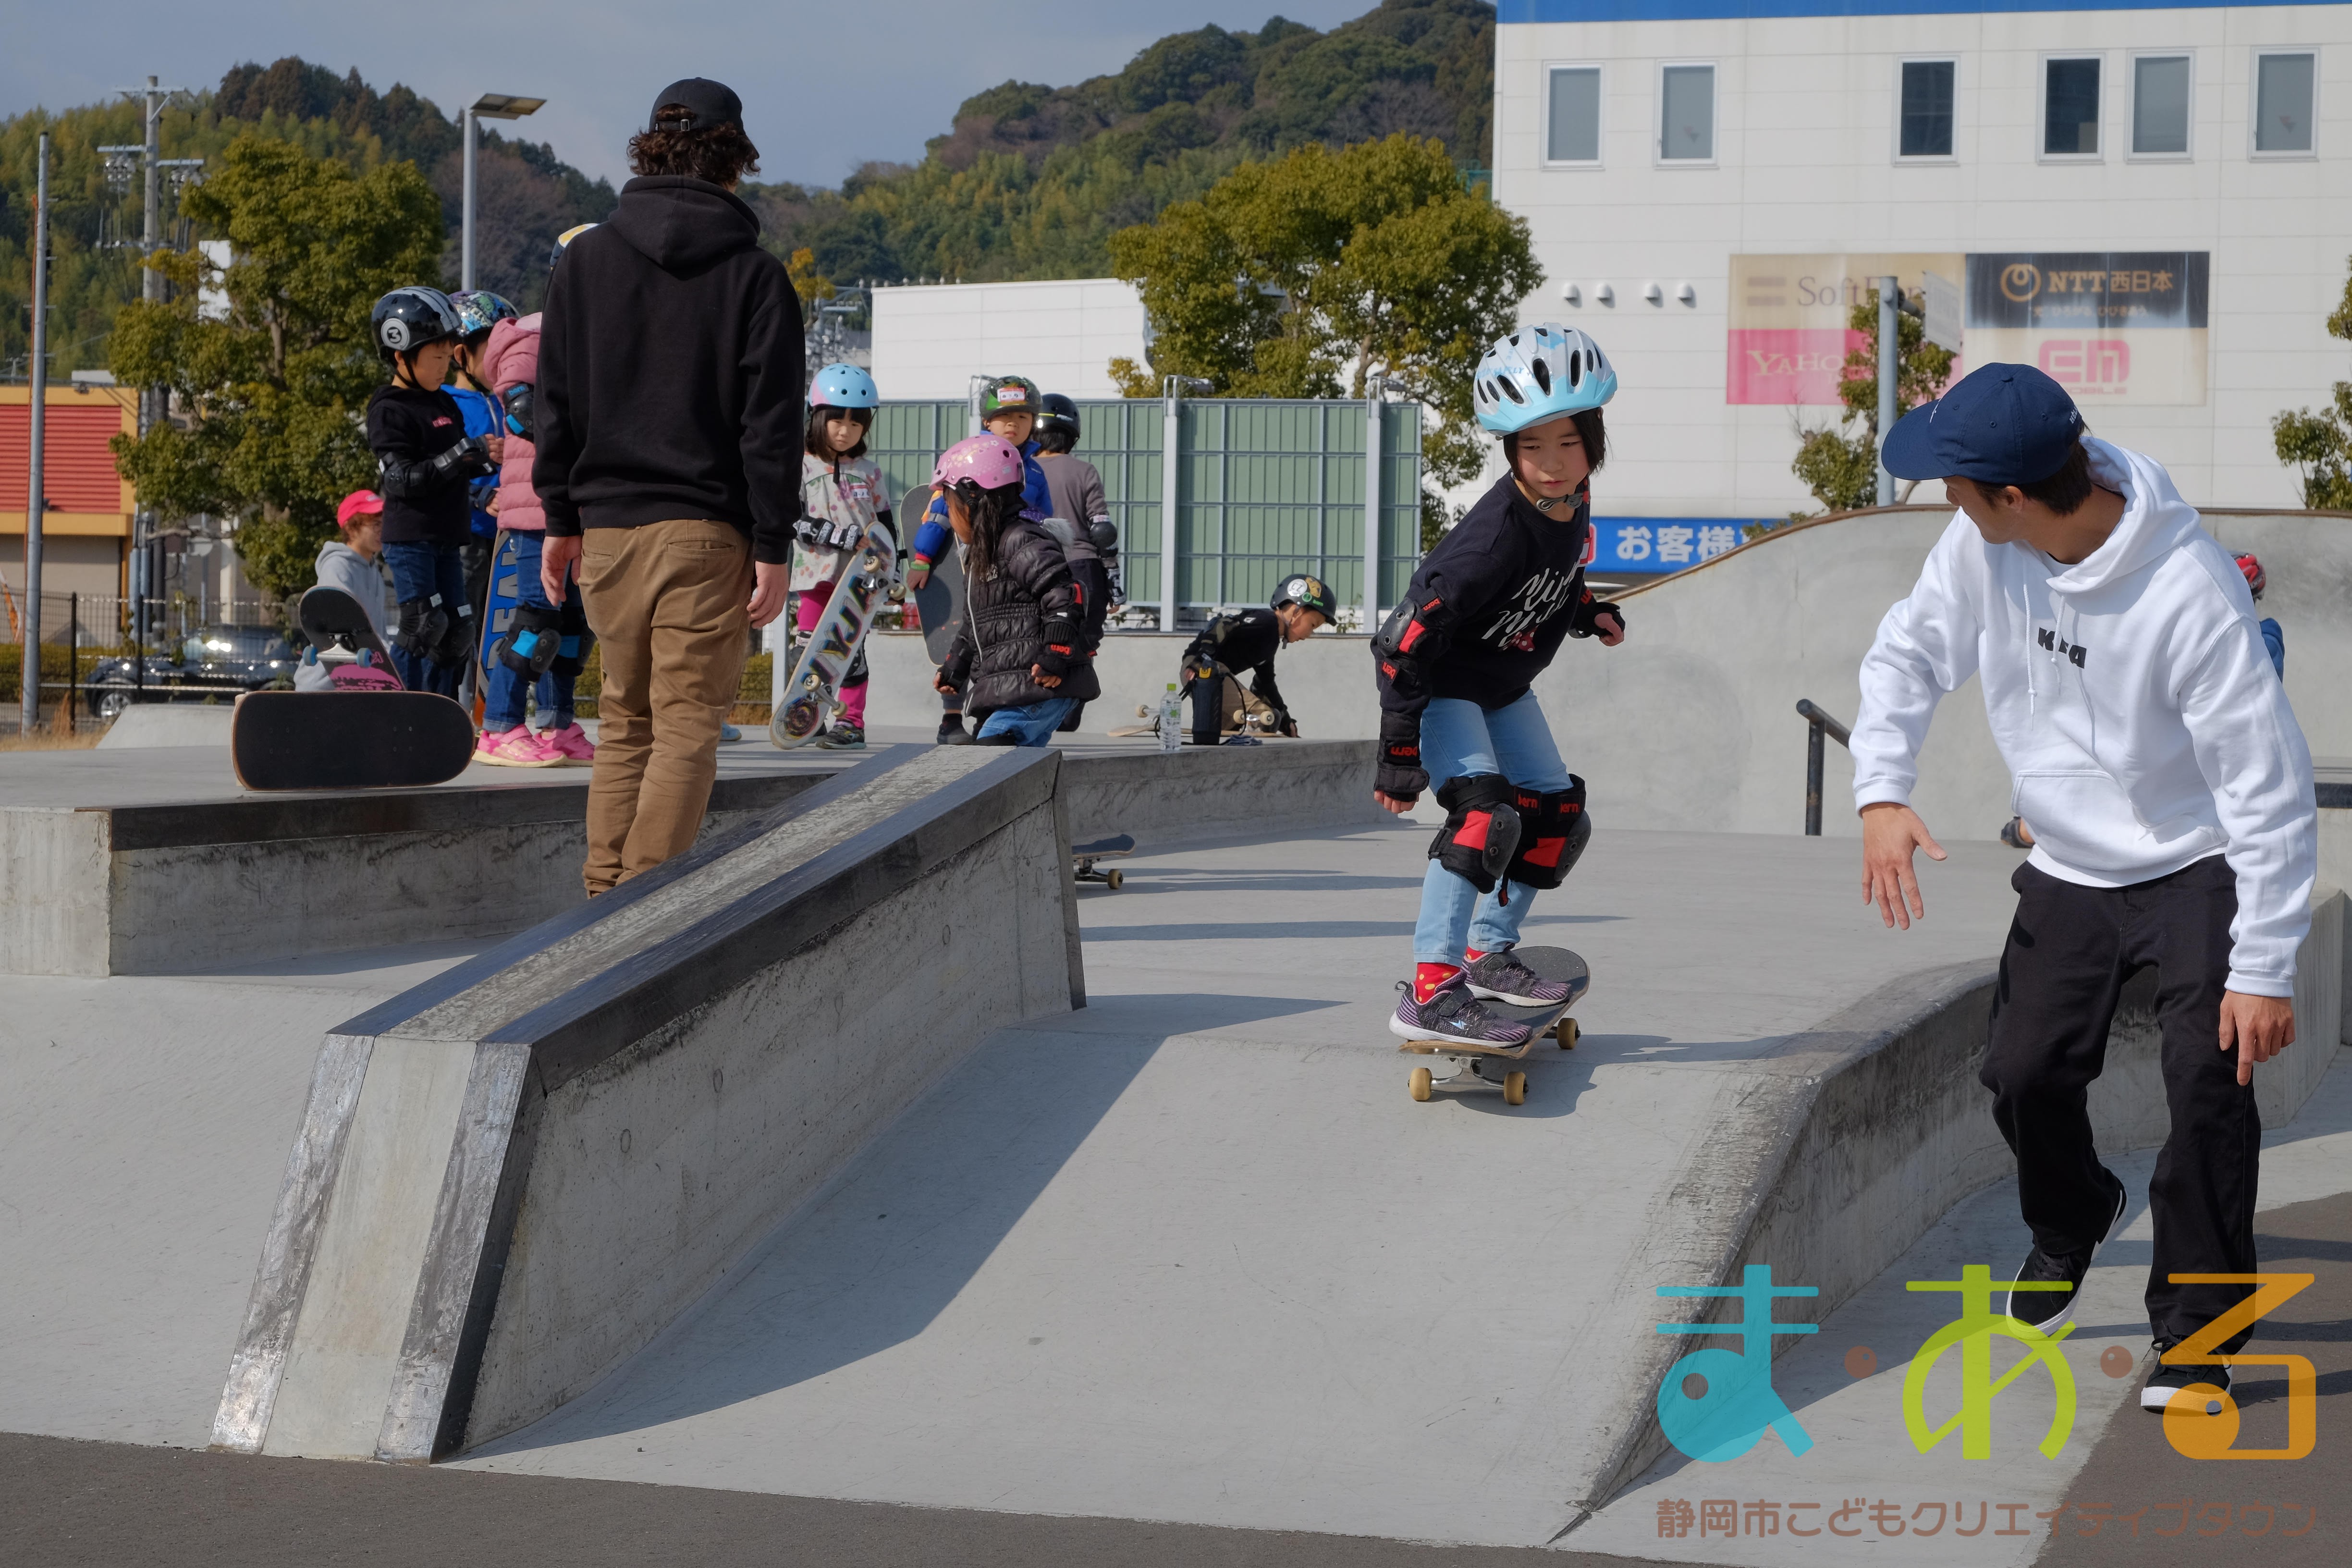 館外講座 挑戦 親子でスケートボード体験会 静岡市こどもクリエイティブタウンま あ る 公式ホームページ